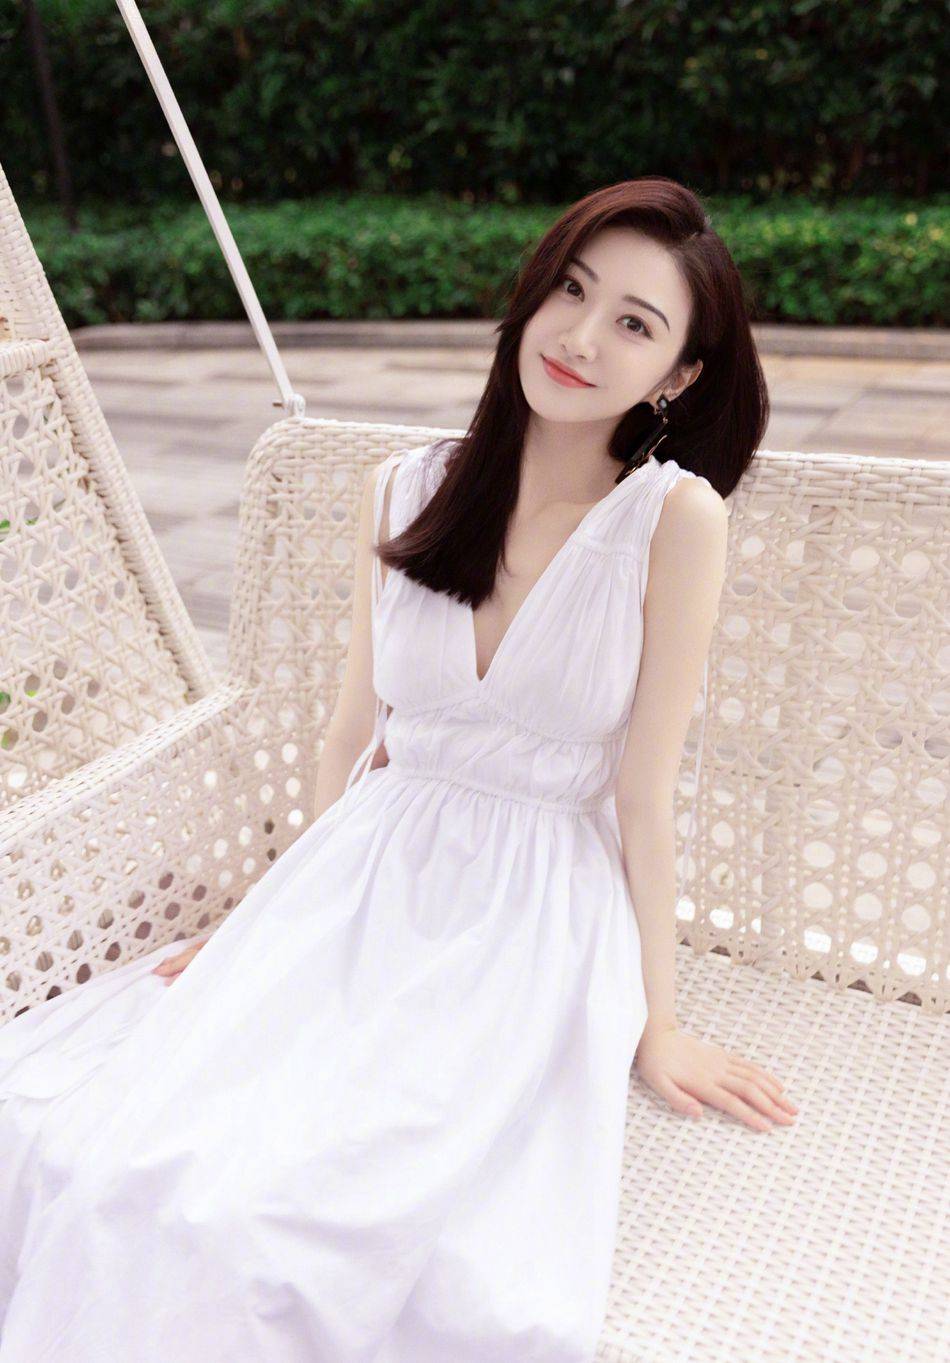 景甜清新白裙户外优雅甜美写真,完美无瑕,诠释生命的美好!